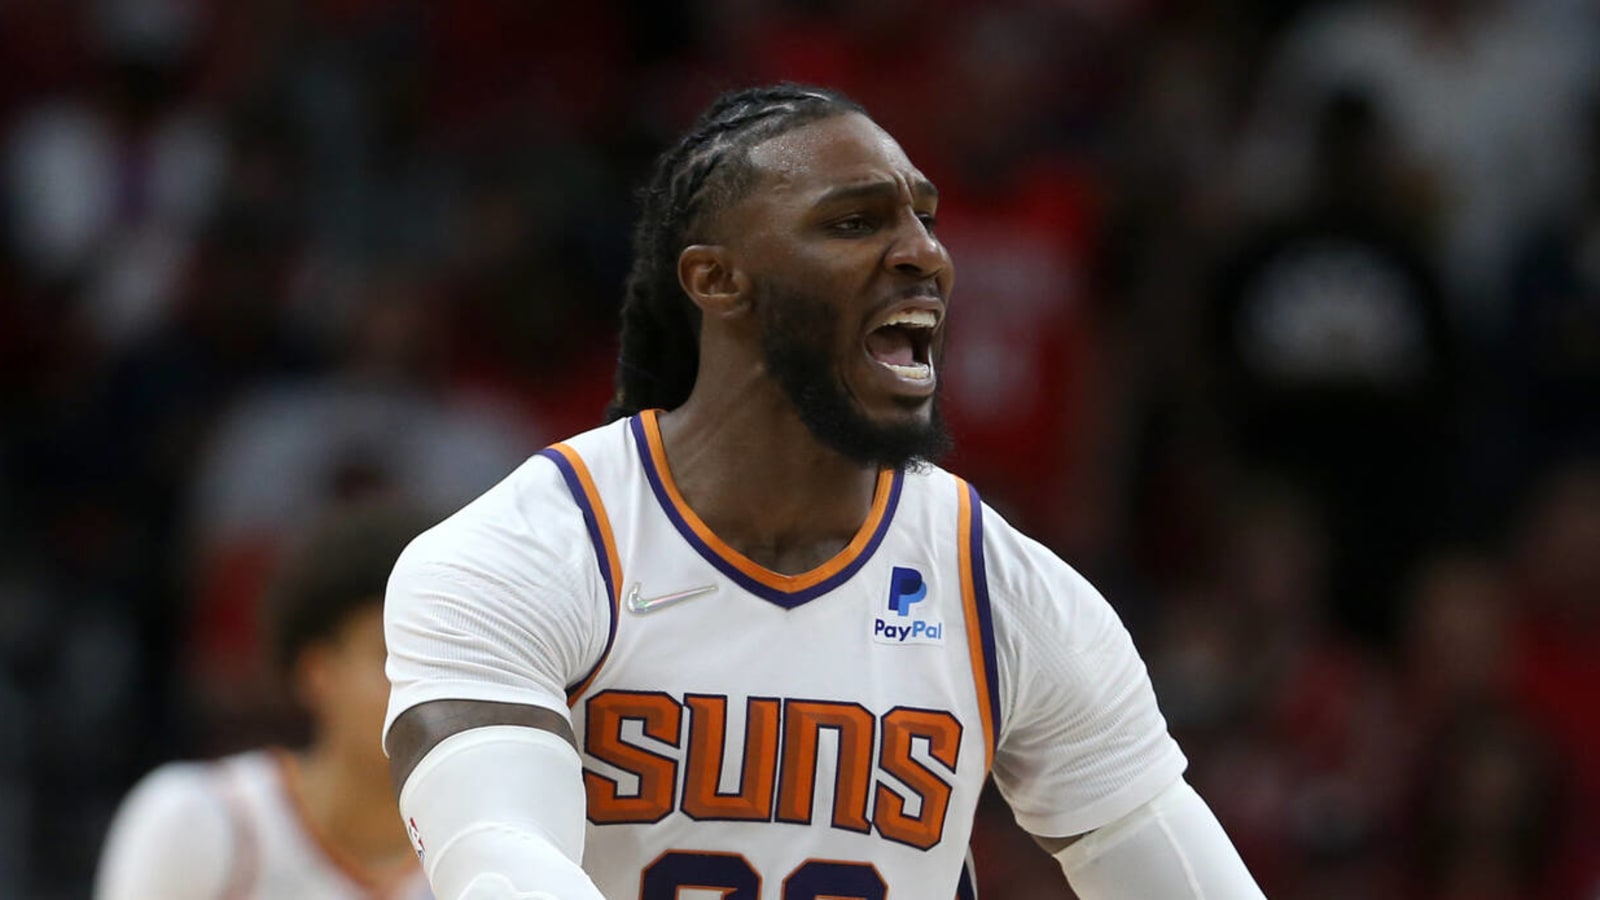 The Suns' Crowder get last laugh at Pelicans fans